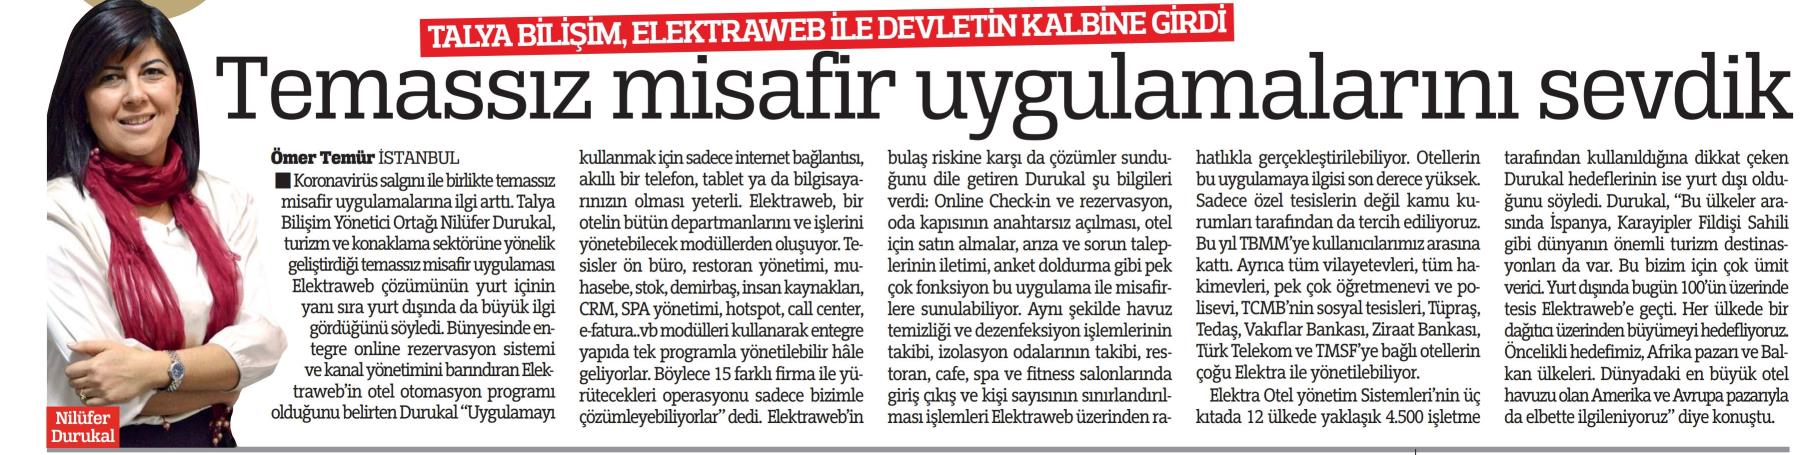 Talya Bilişim Elektraweb İle Devletin Kalbine Girdi. Temassız Misafir Uygulamalarını Sevdik – Türkiye Gazetesi (31.08.2021)